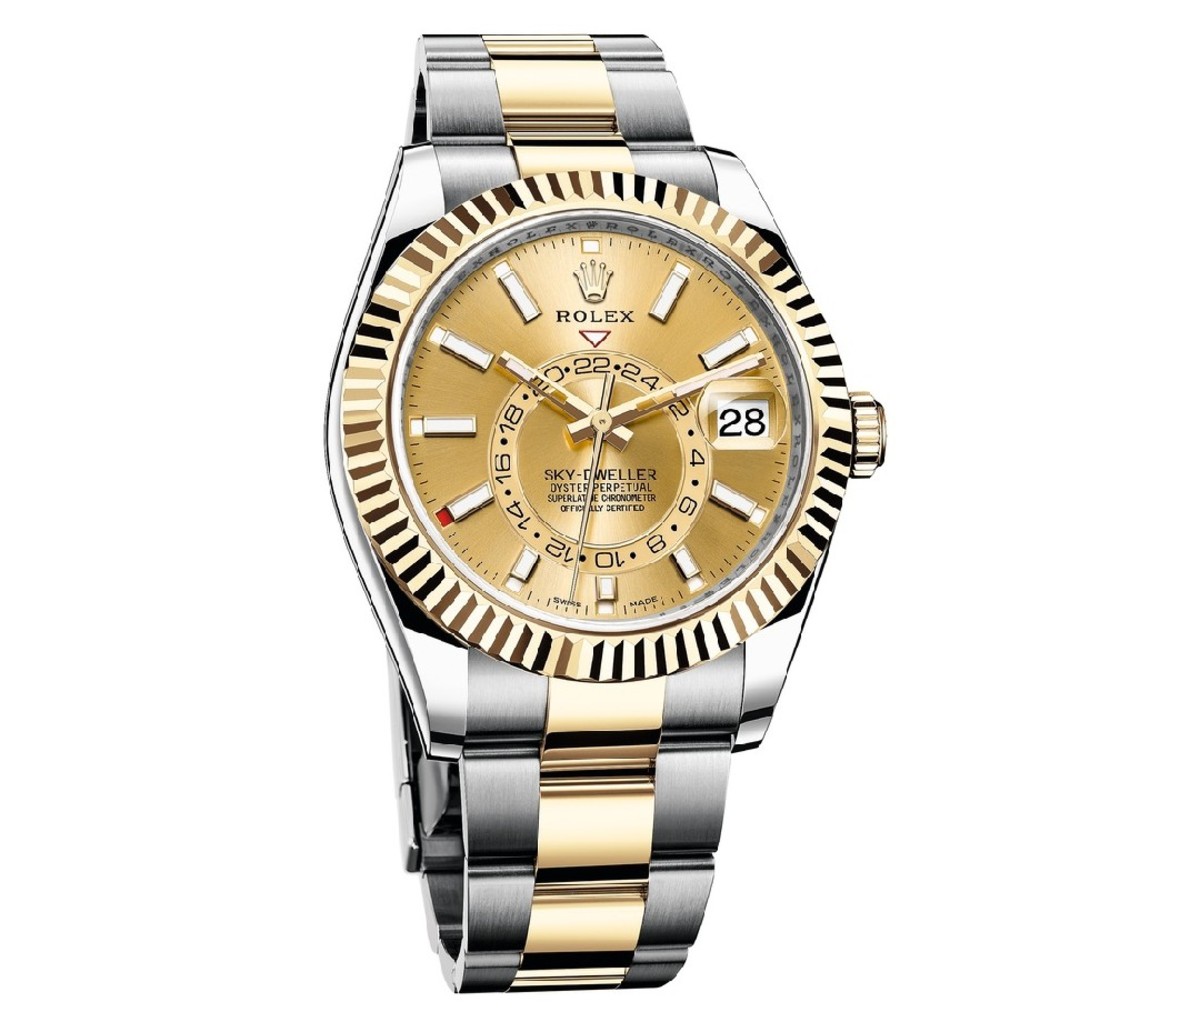 Rolex Sky-Dweller watch.